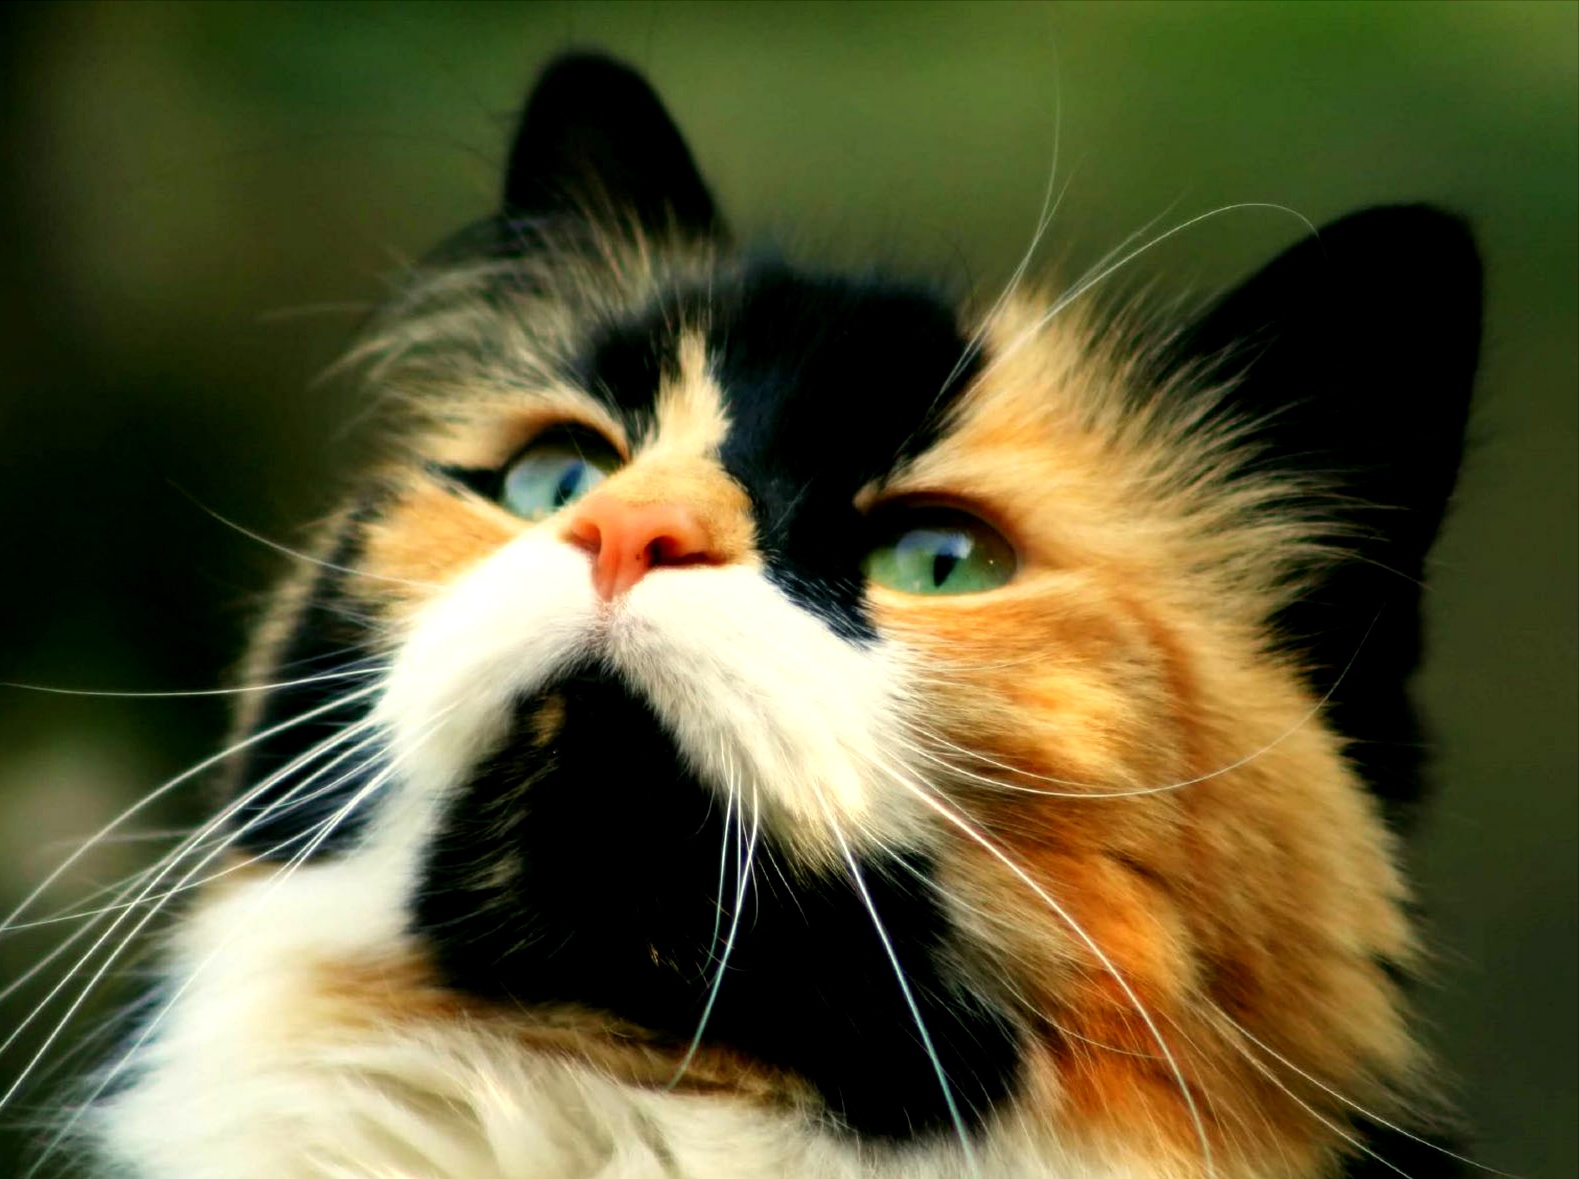  Gambar  Kucing  Imut dan Lucu Kumpulan  Gambar 